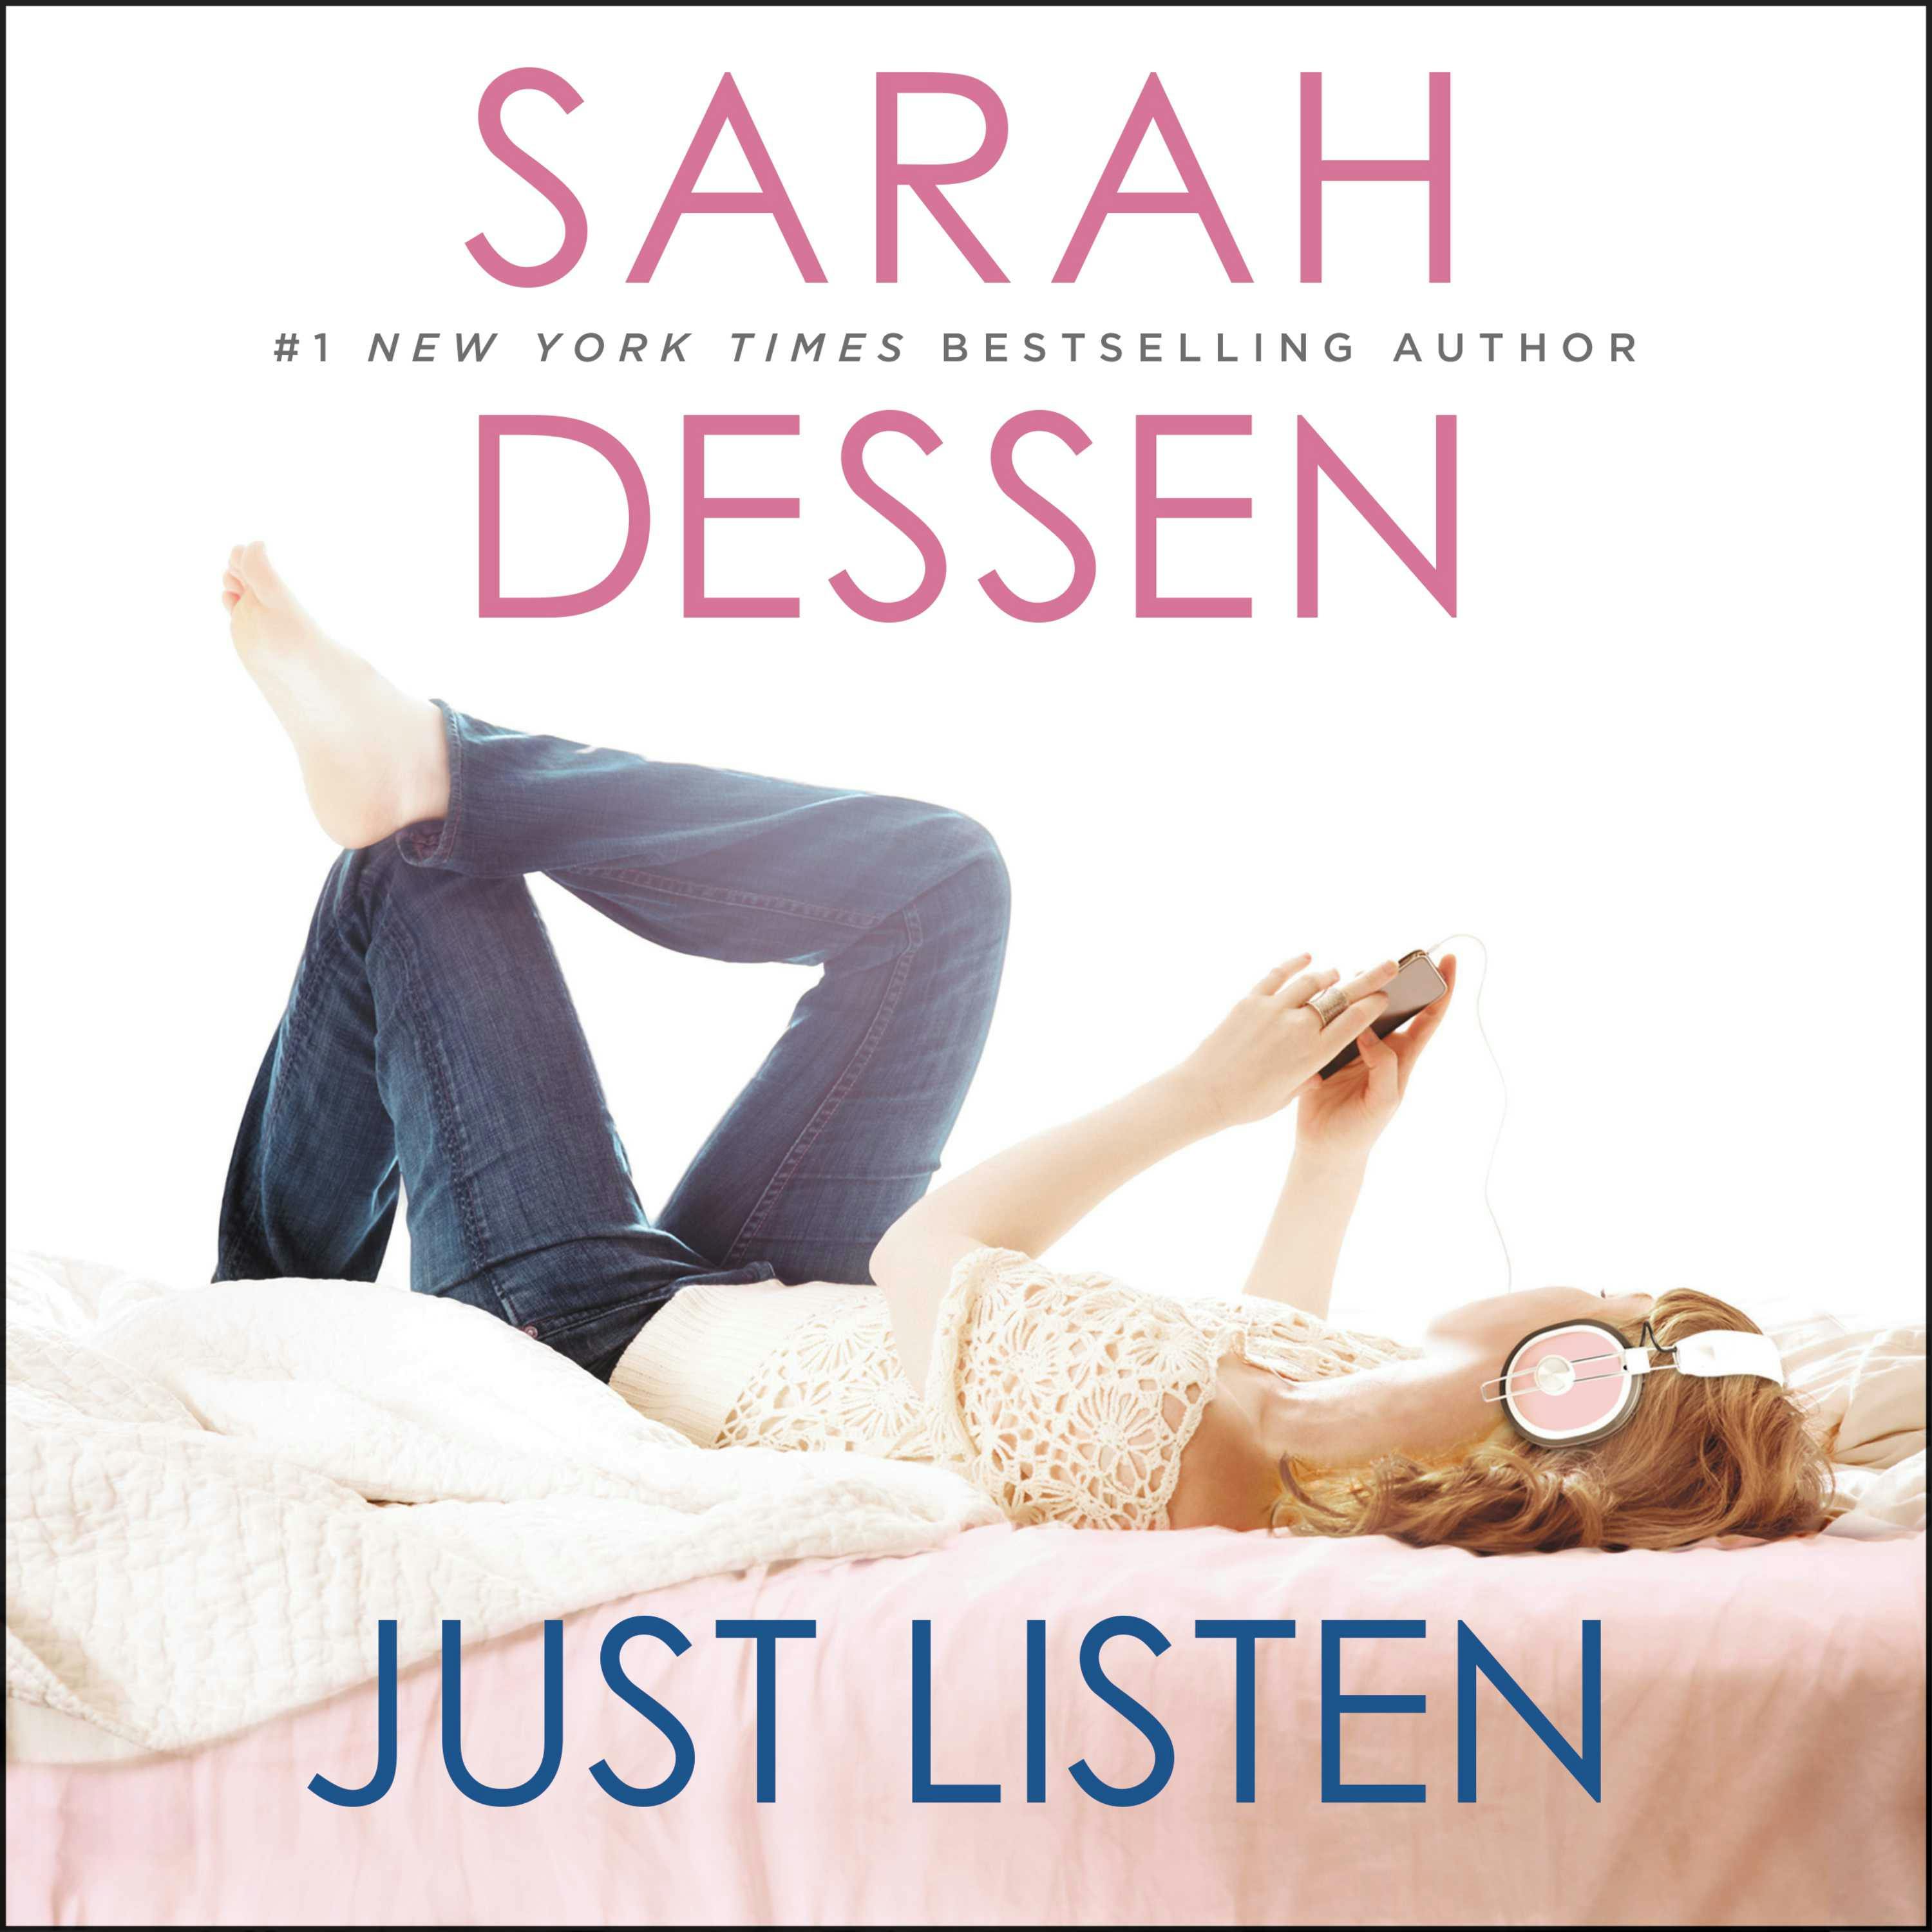 Just Listen - Sarah Dessen